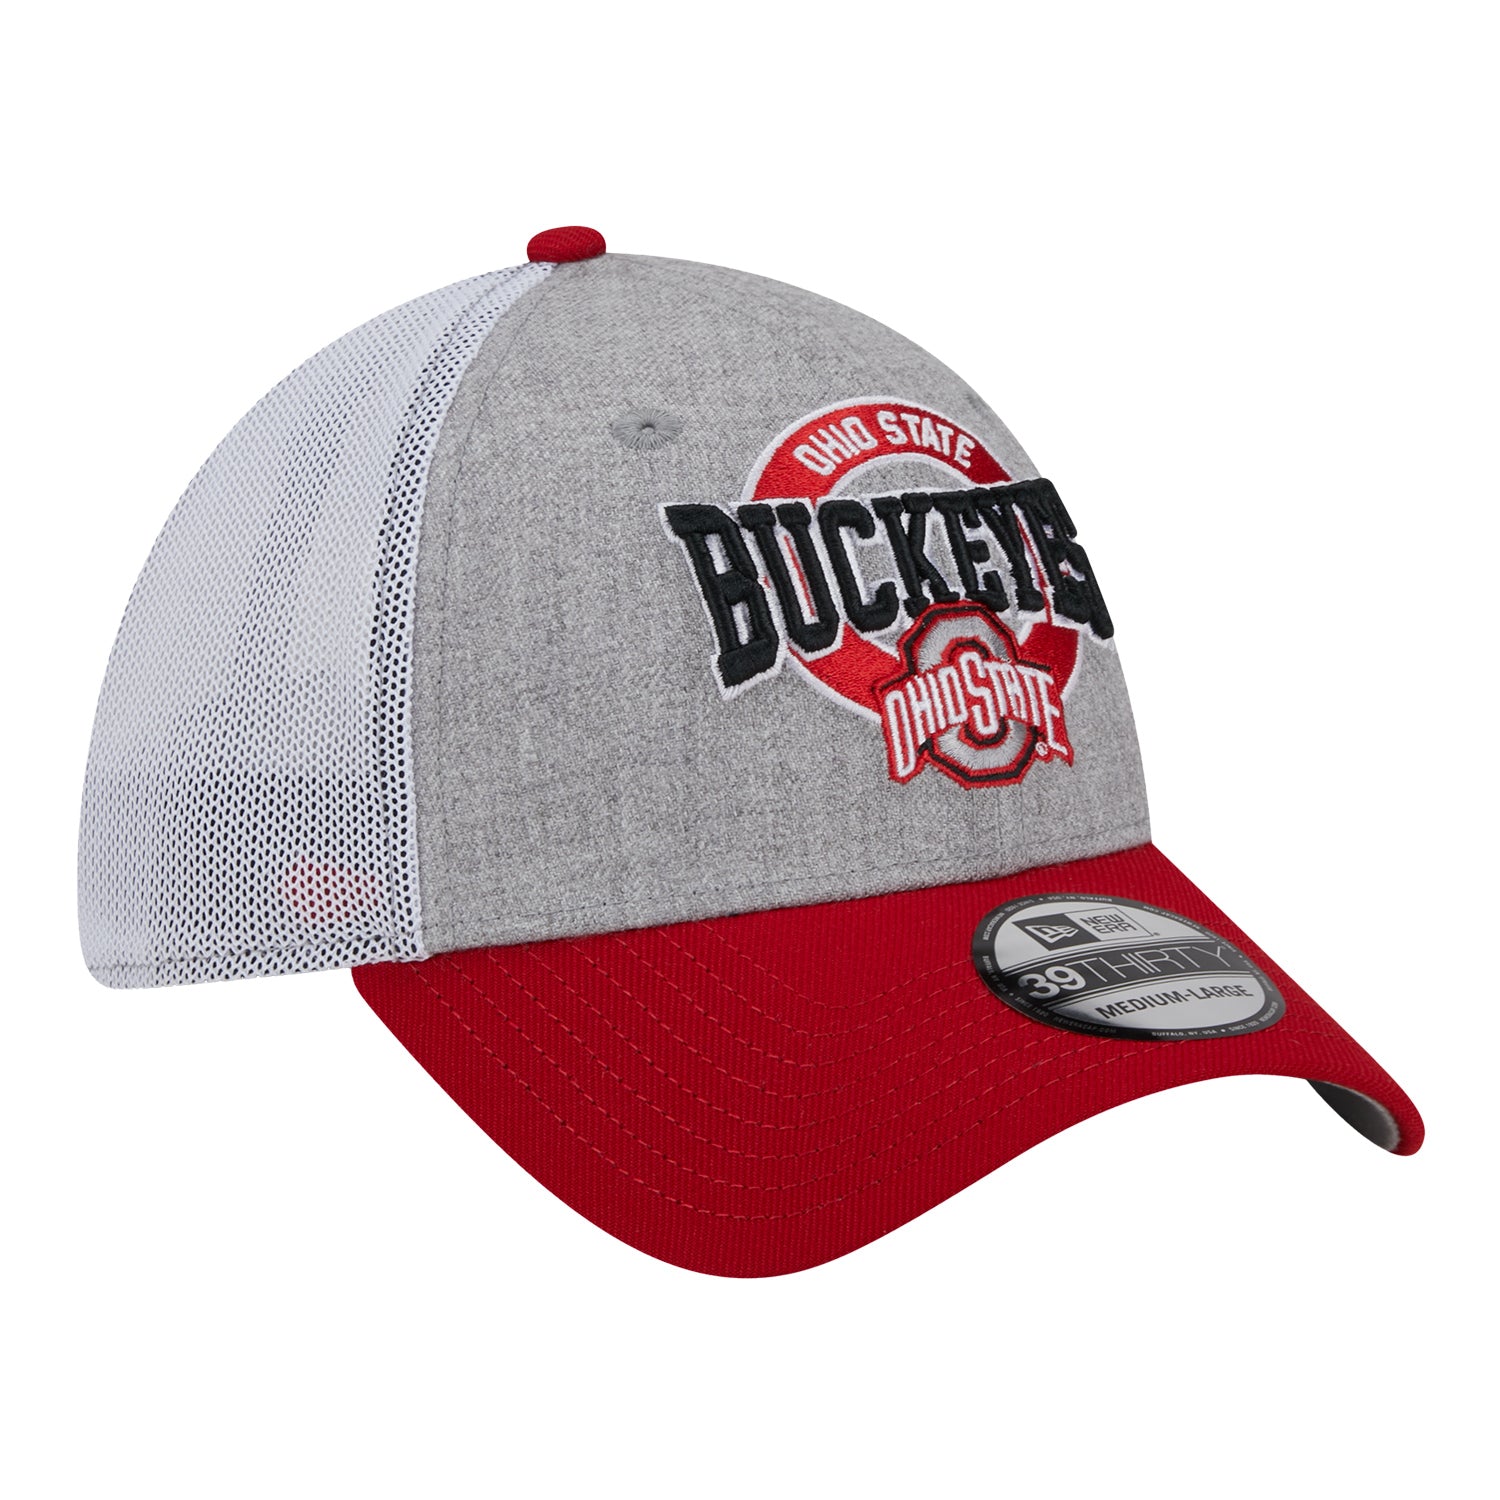 Ohio State Buckeyes Heathered Round Logo Gray Flex Hat | Shop OSU Buckeyes